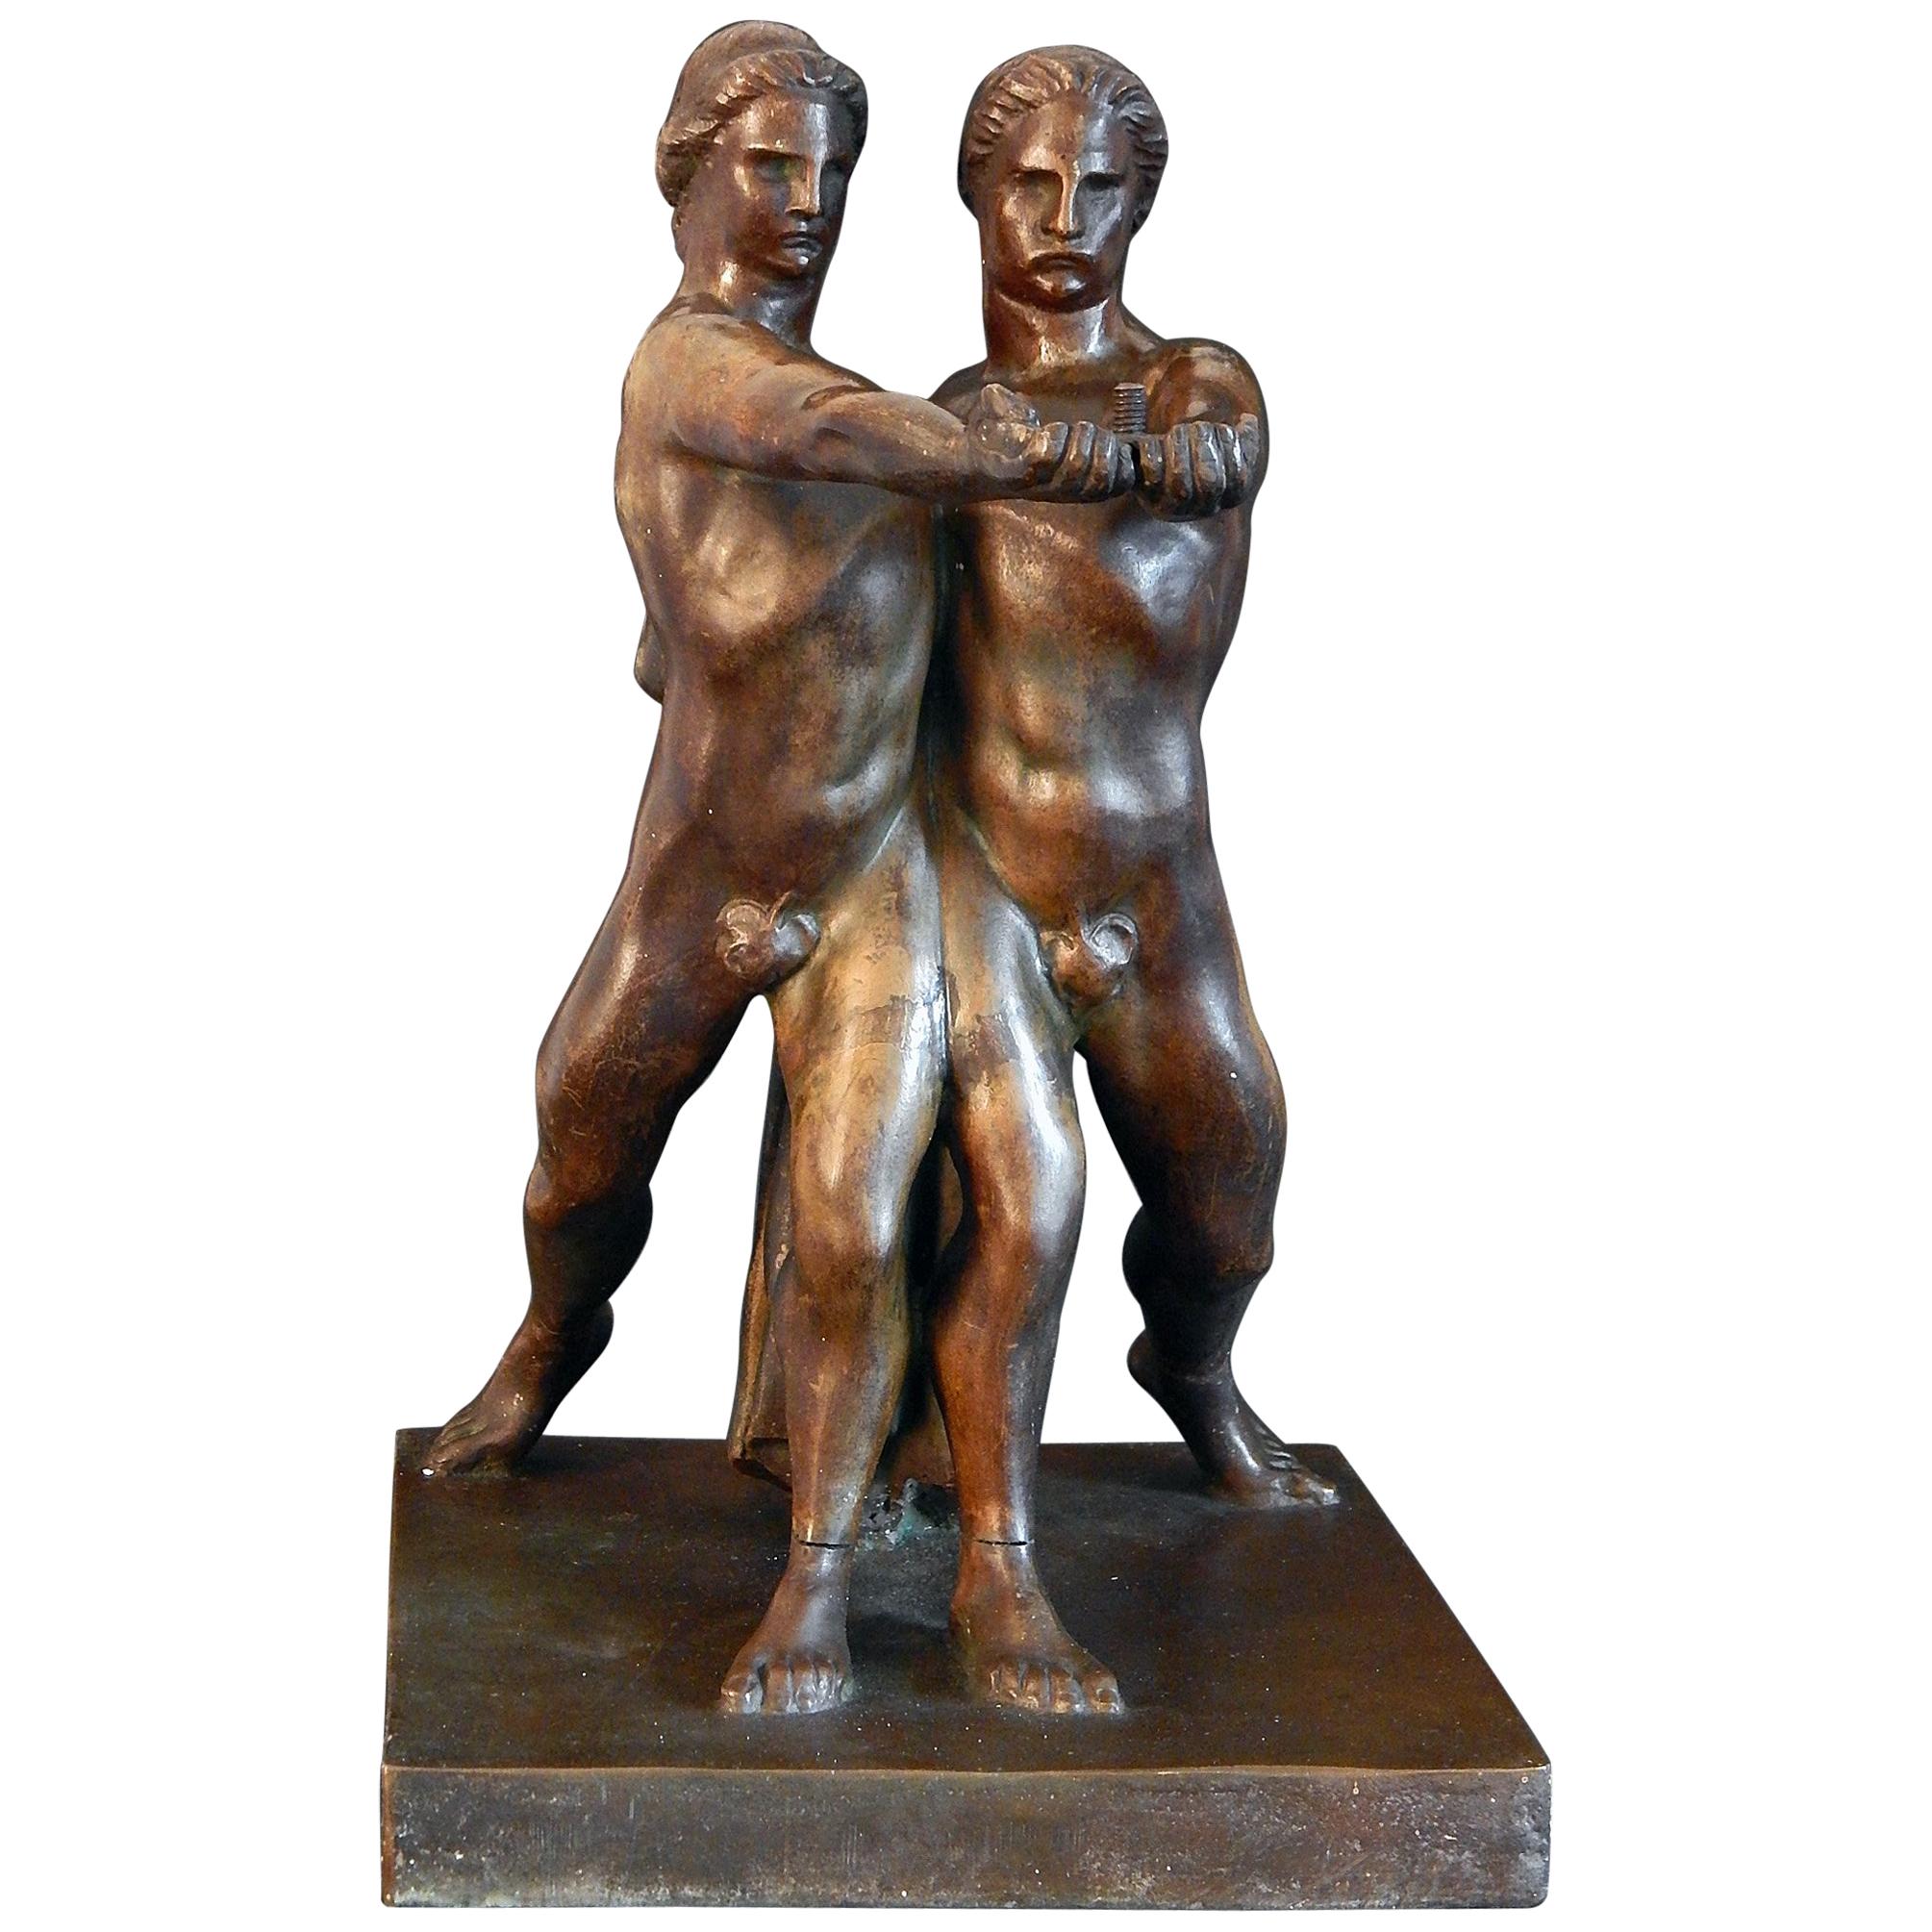 « Deux athlètes unis », sculpture italienne unique de style Art déco des années 1930 avec nus masculins